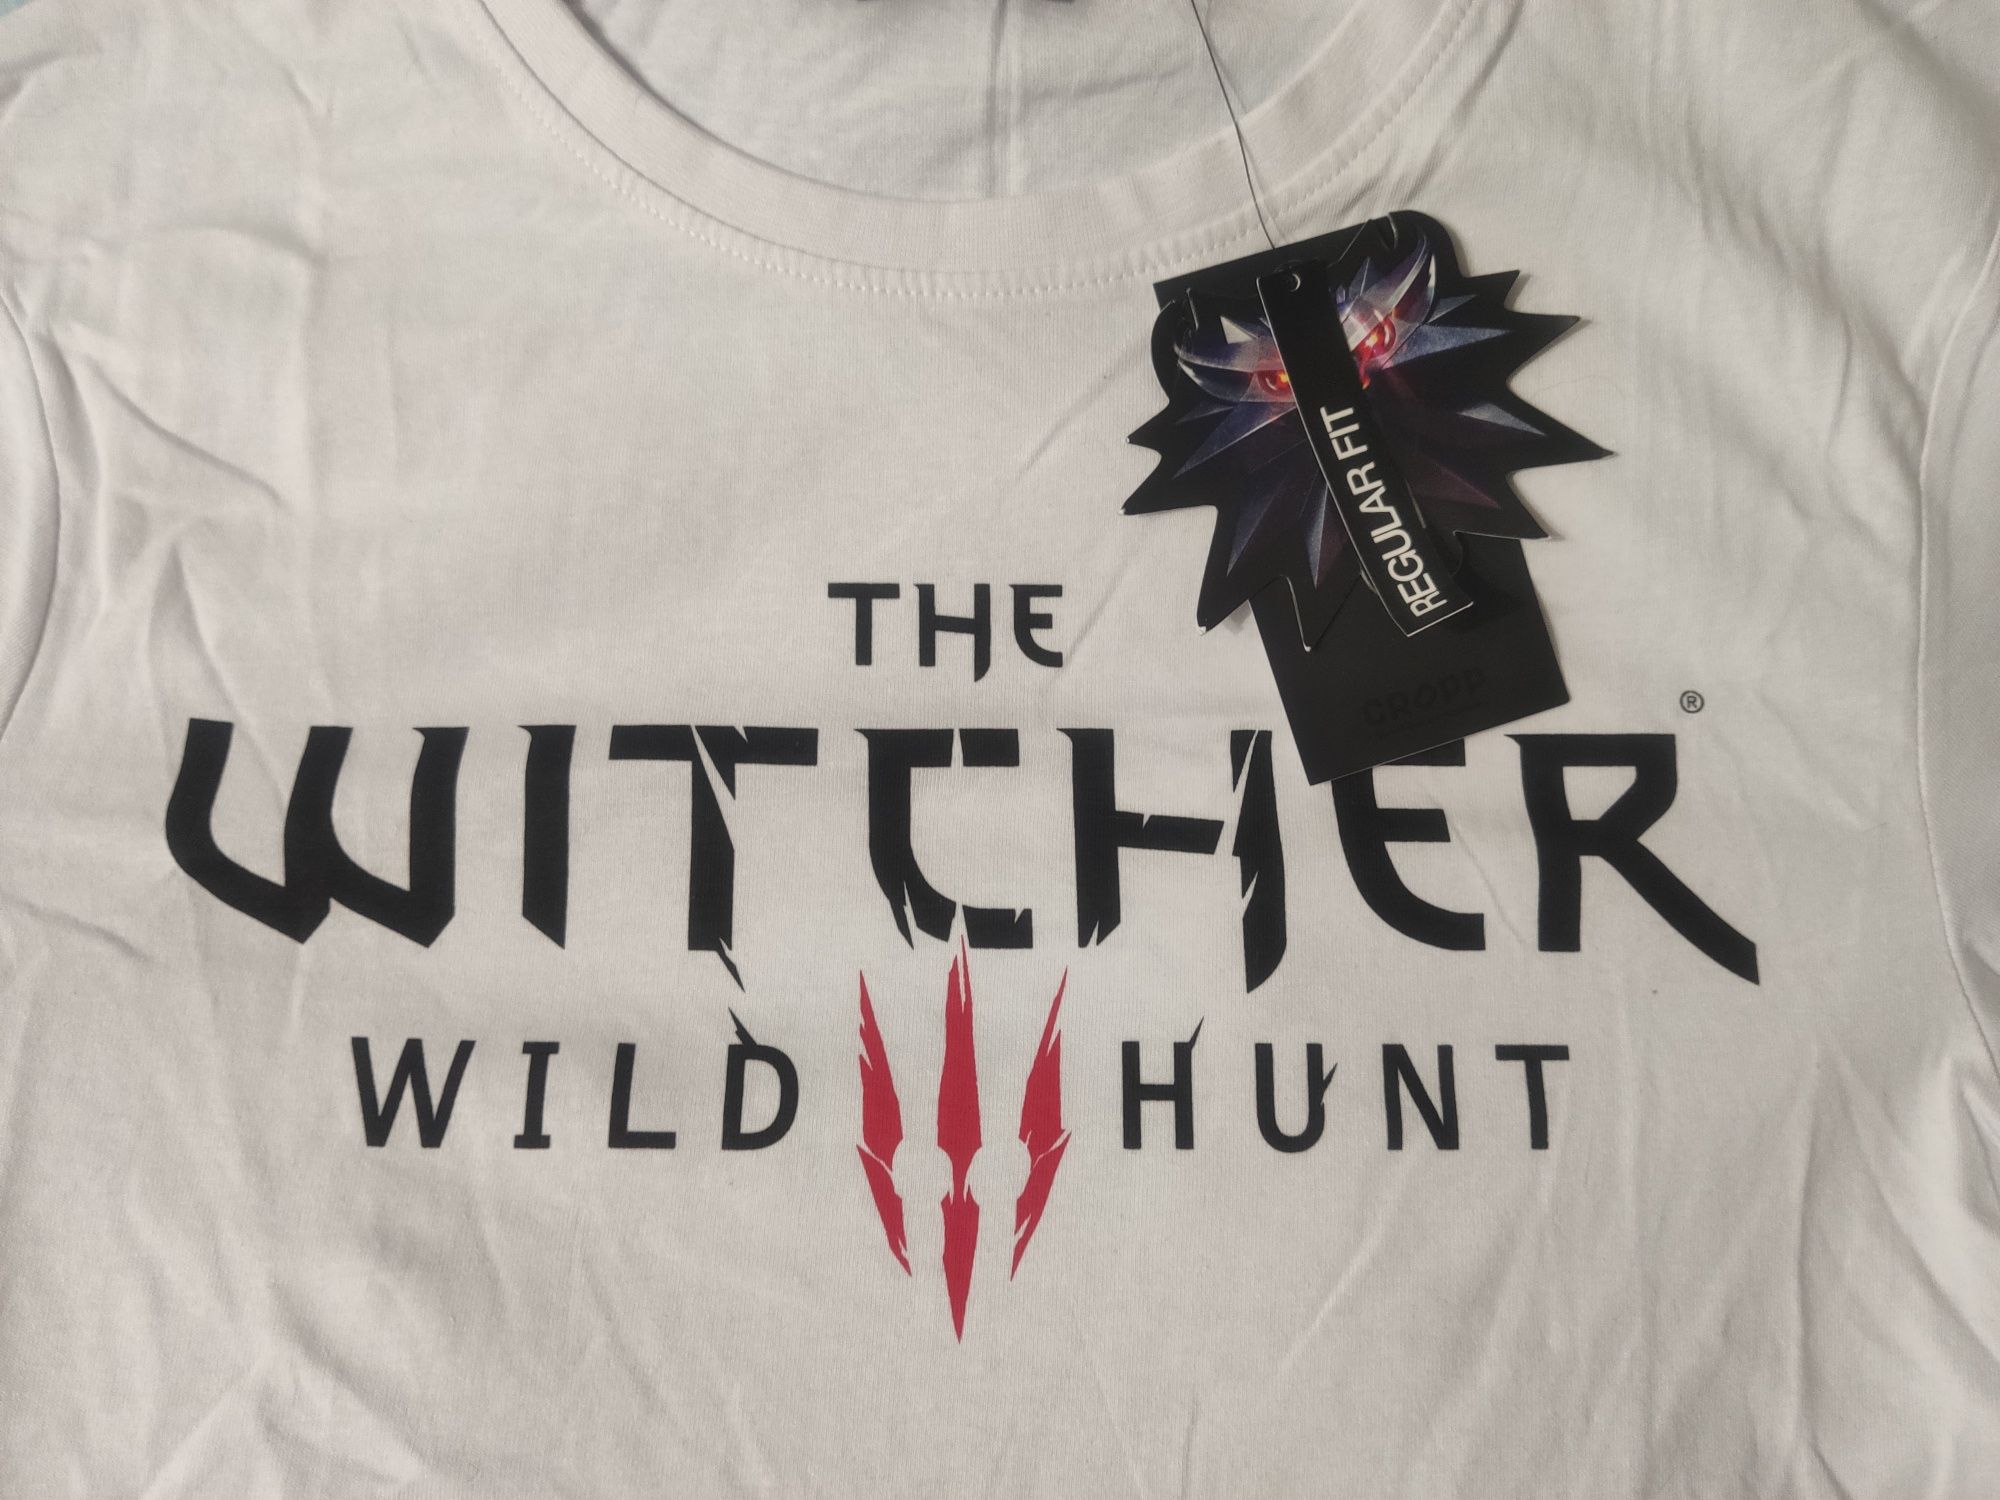 Nowy t-shirt Wiedźmin dziki gon, The Witcher  Wild III hunt.